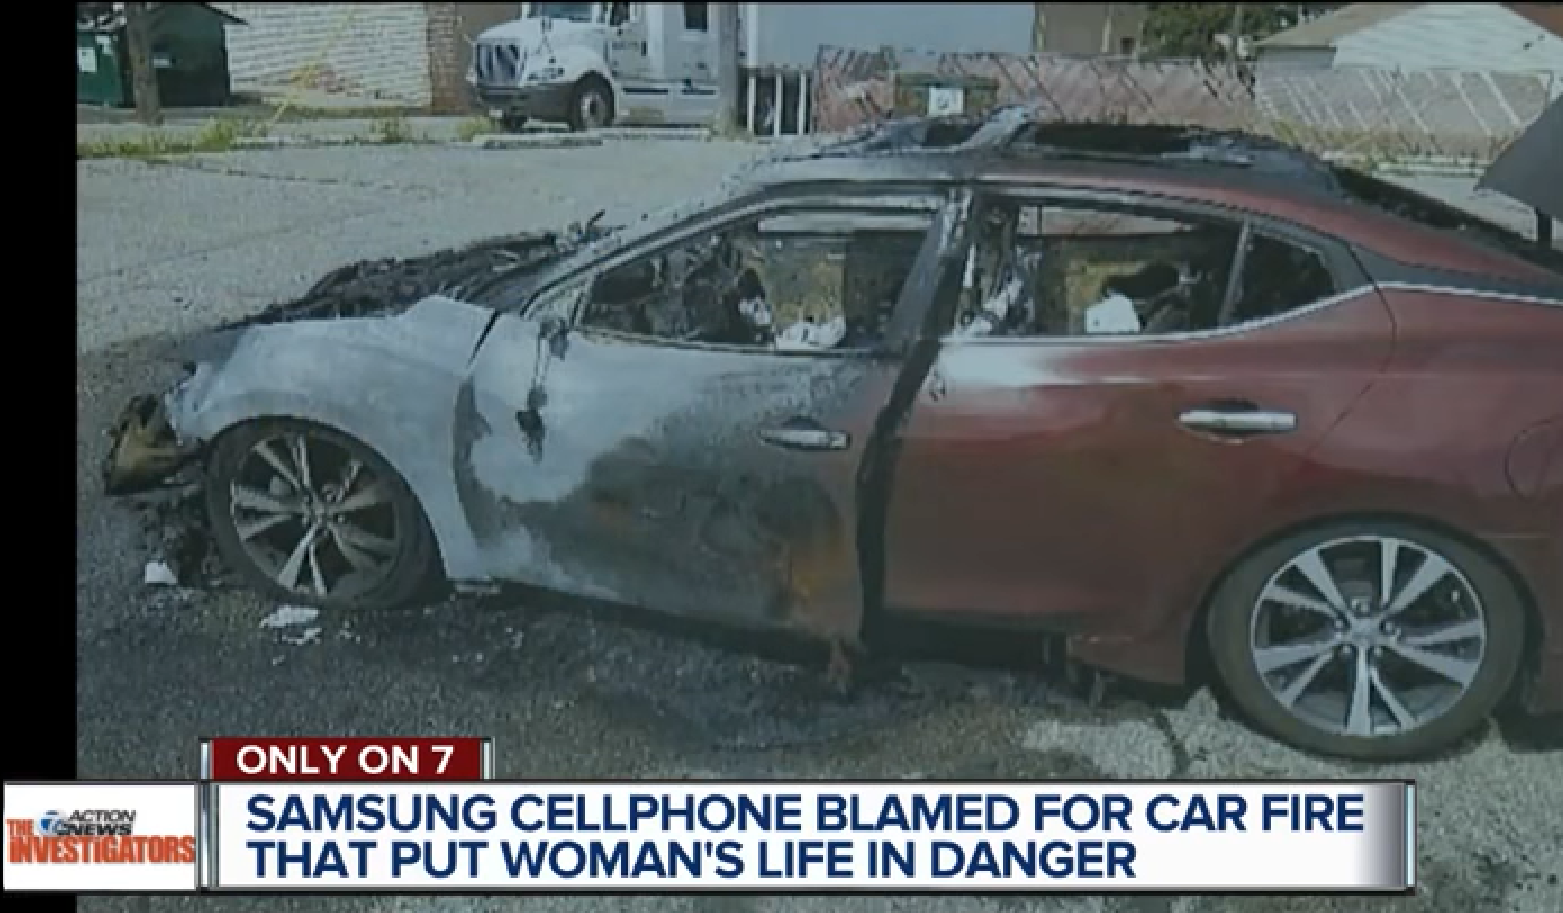 เกิดเหตุไฟไหม้รถทั้งคันในสหรัฐ เจ้าของรถชี้มือถือ Samsung ที่วางไว้เกิดประกายไฟ อาจเป็นต้นเพลิง